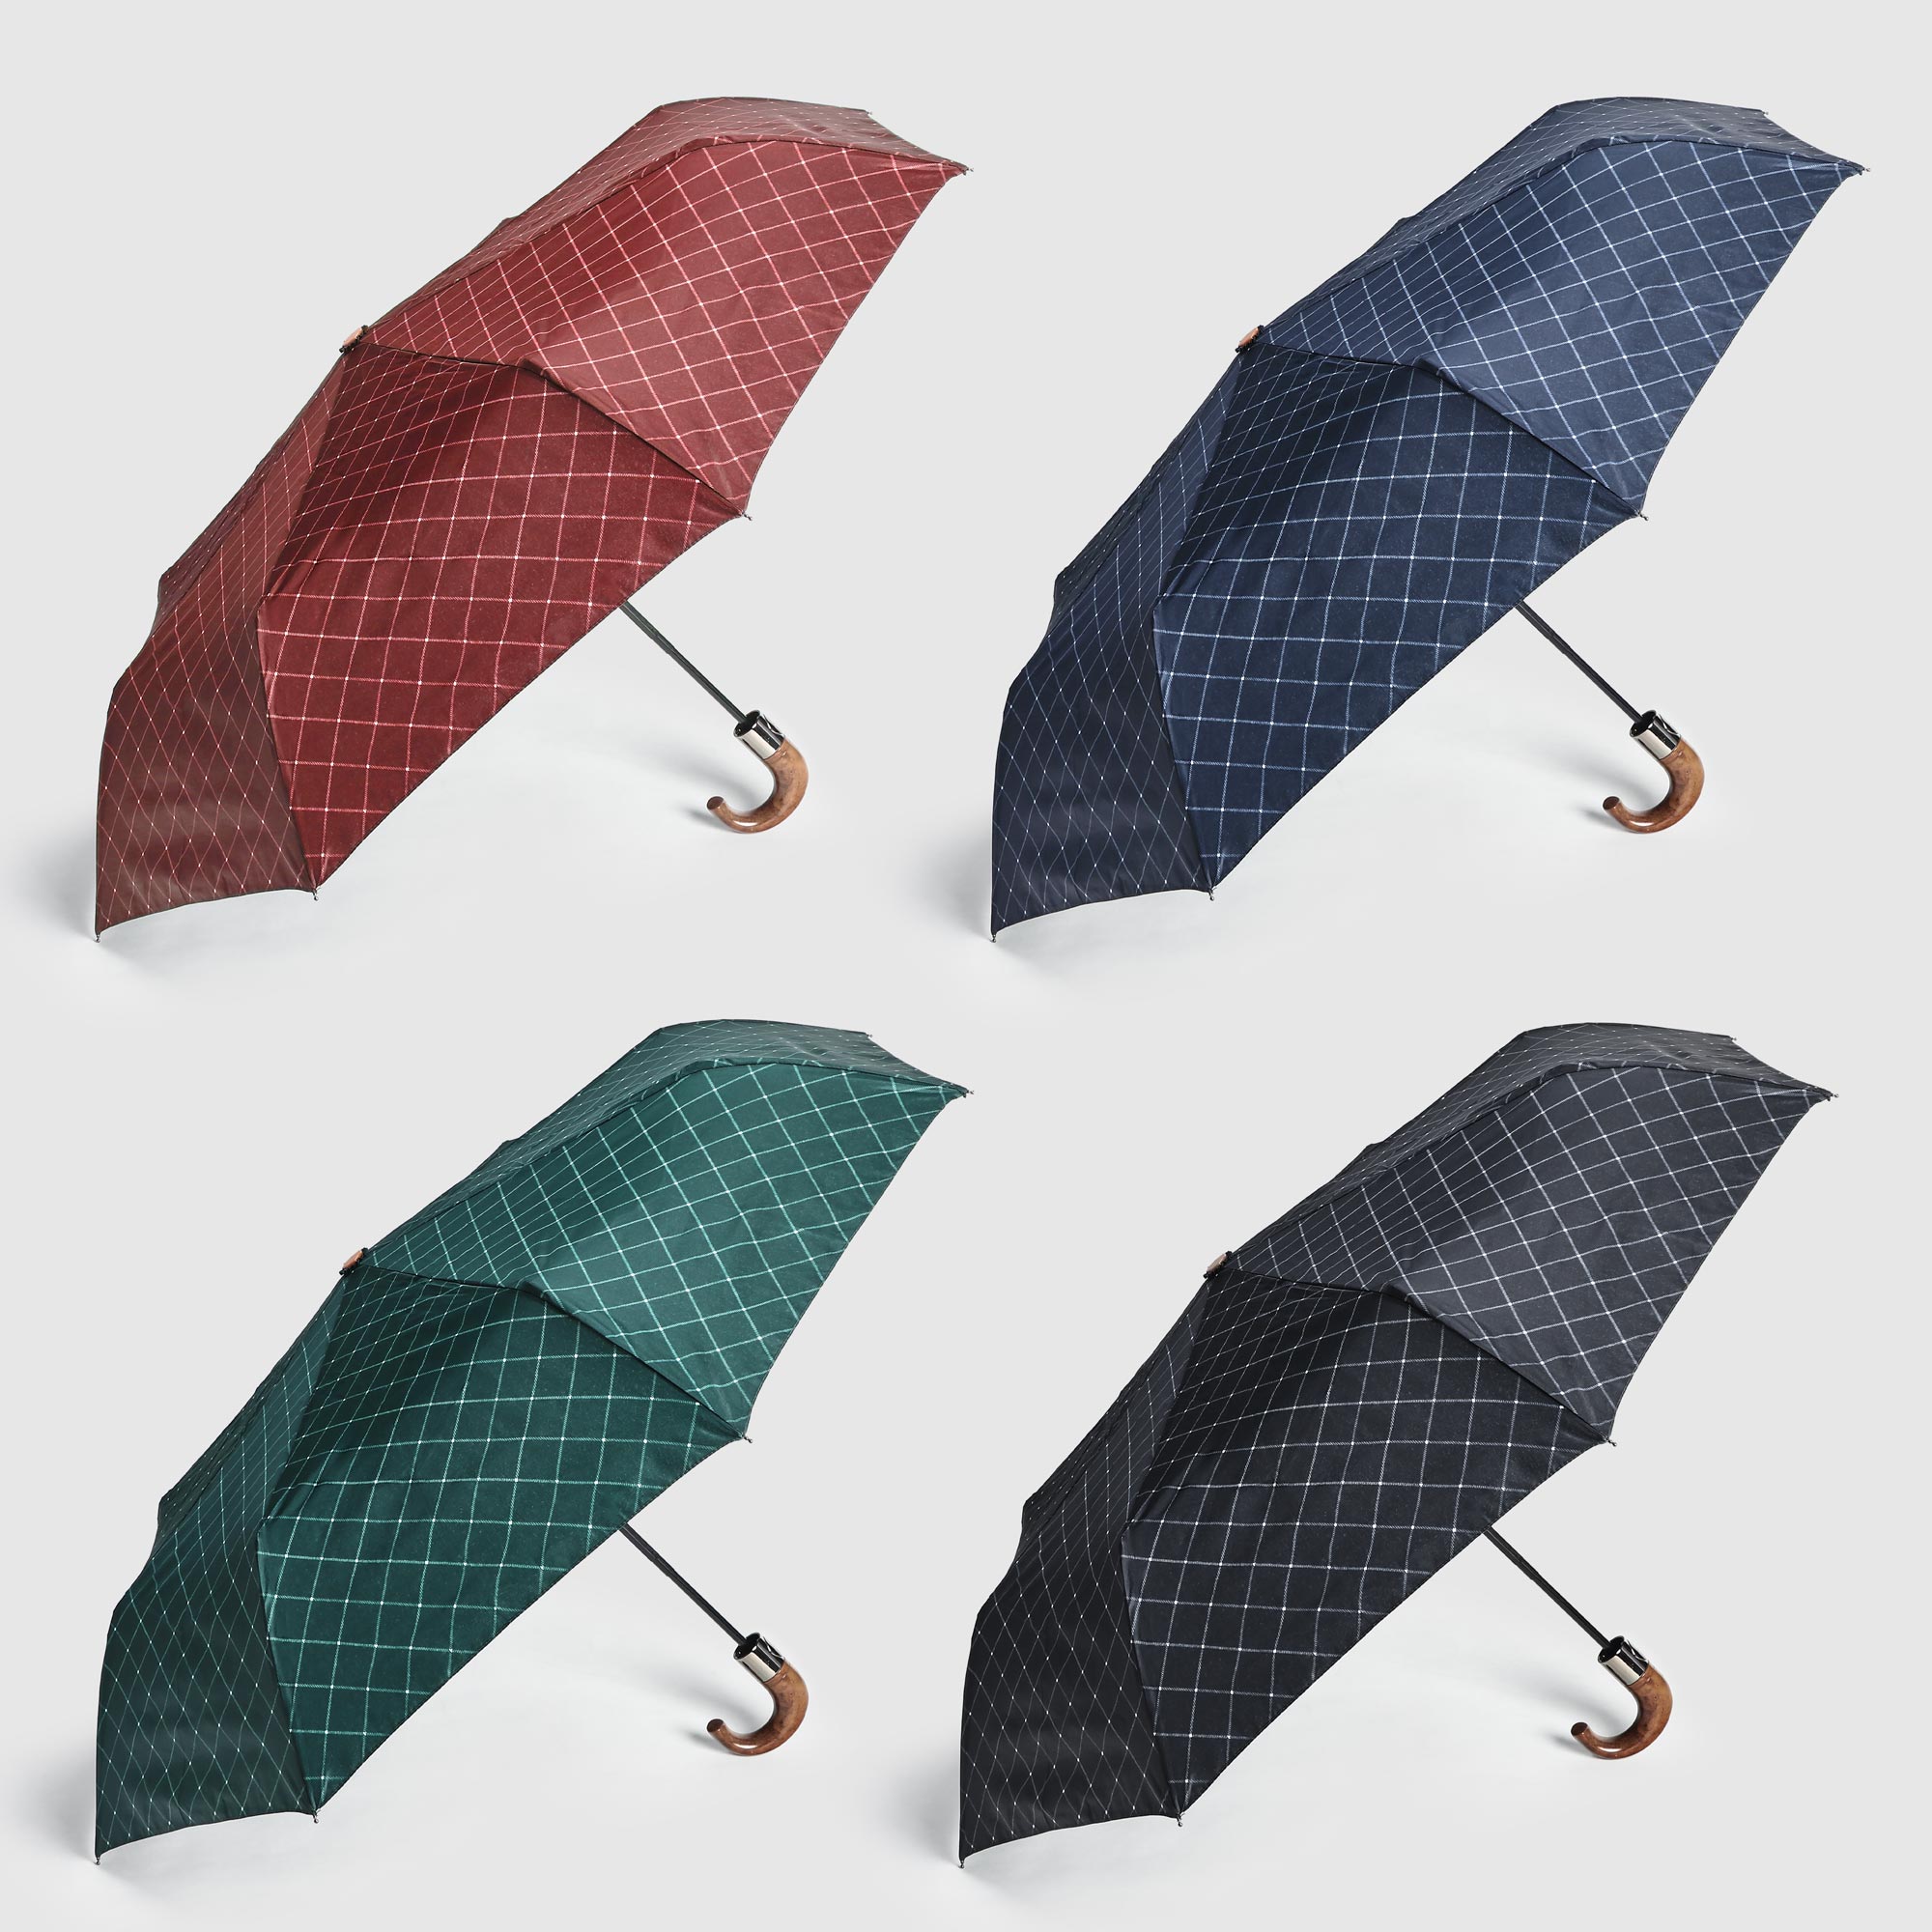 фото Складной зонт jiemailong автоматический в ассортименте 56 см